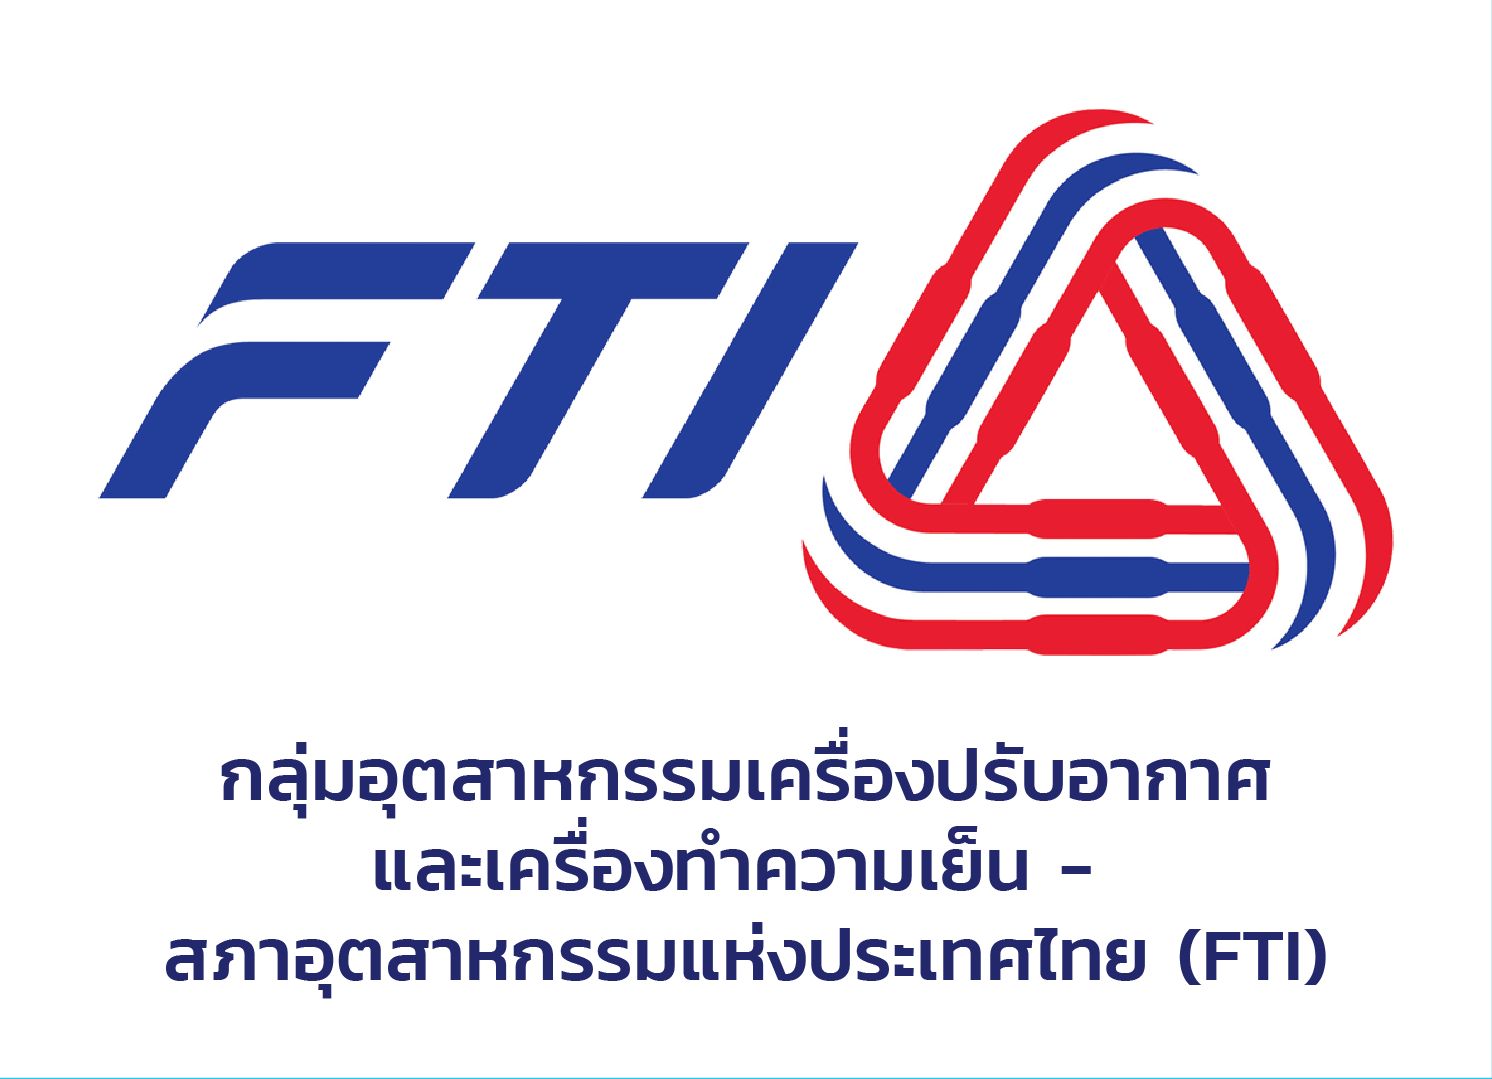 กลุ่มอุตสาหกรรมเครื่องปรับอากาศและเครื่องทำความเย็น - สภาอุตสาหกรรมแห่งประเทศไทย (FTI)